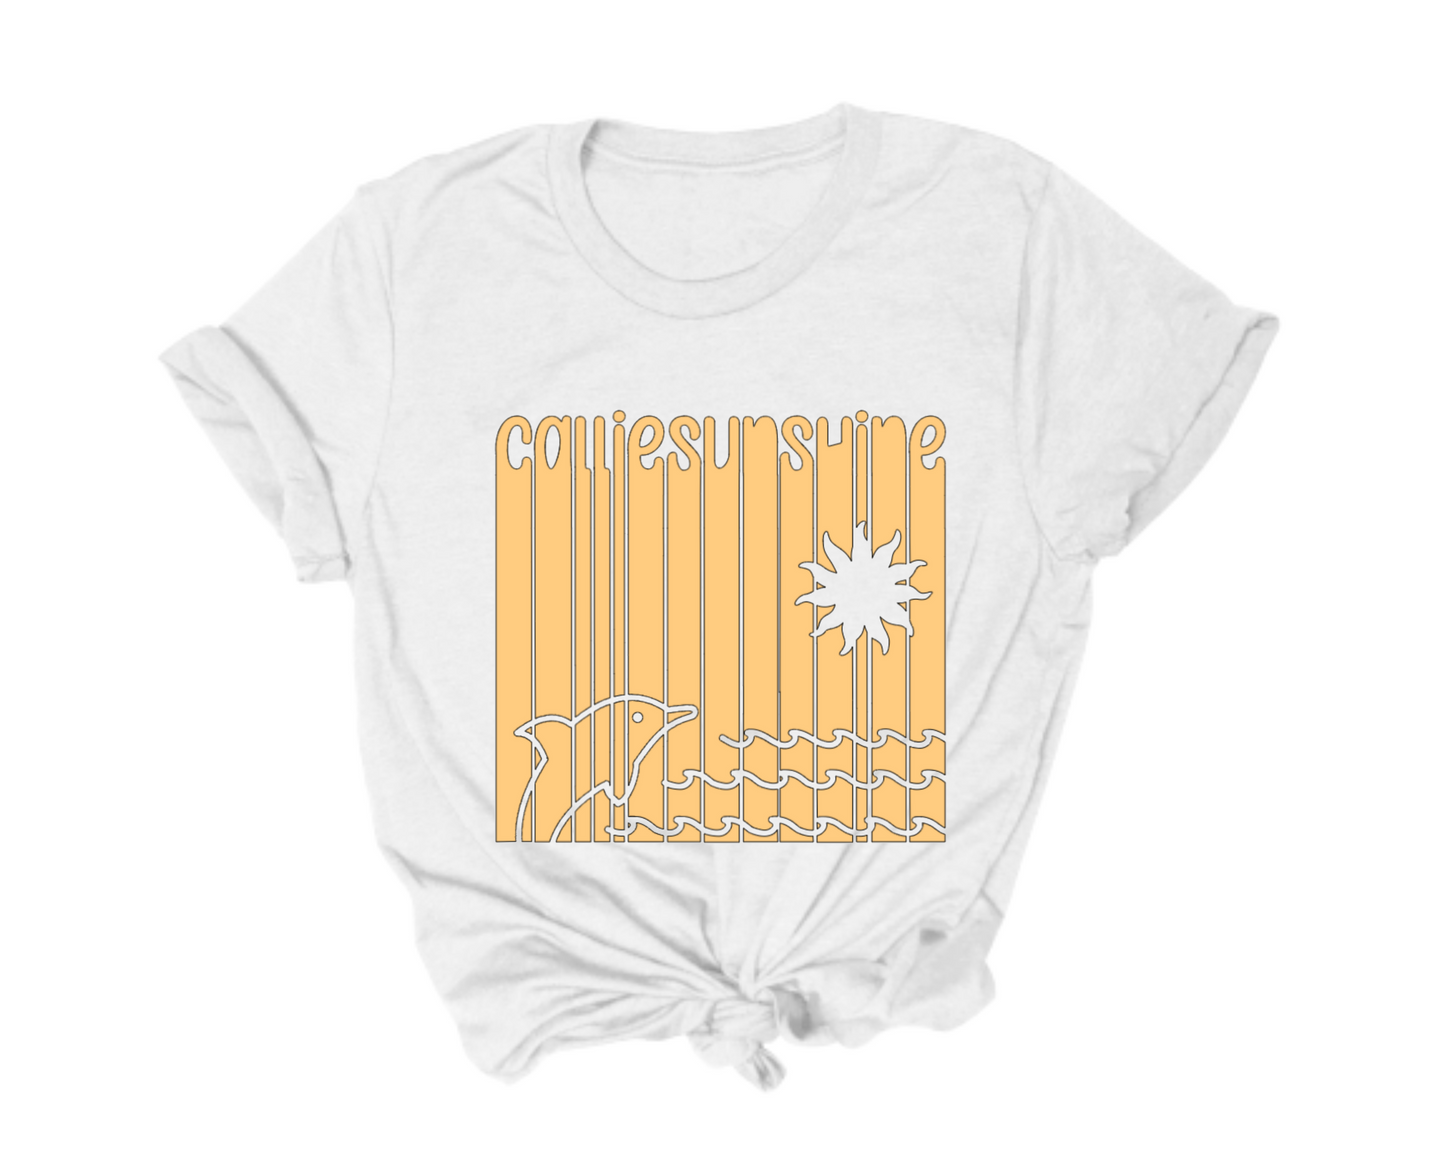 Callie Sunshine Beach Relaxed Fit T-Shirt - Adult Women